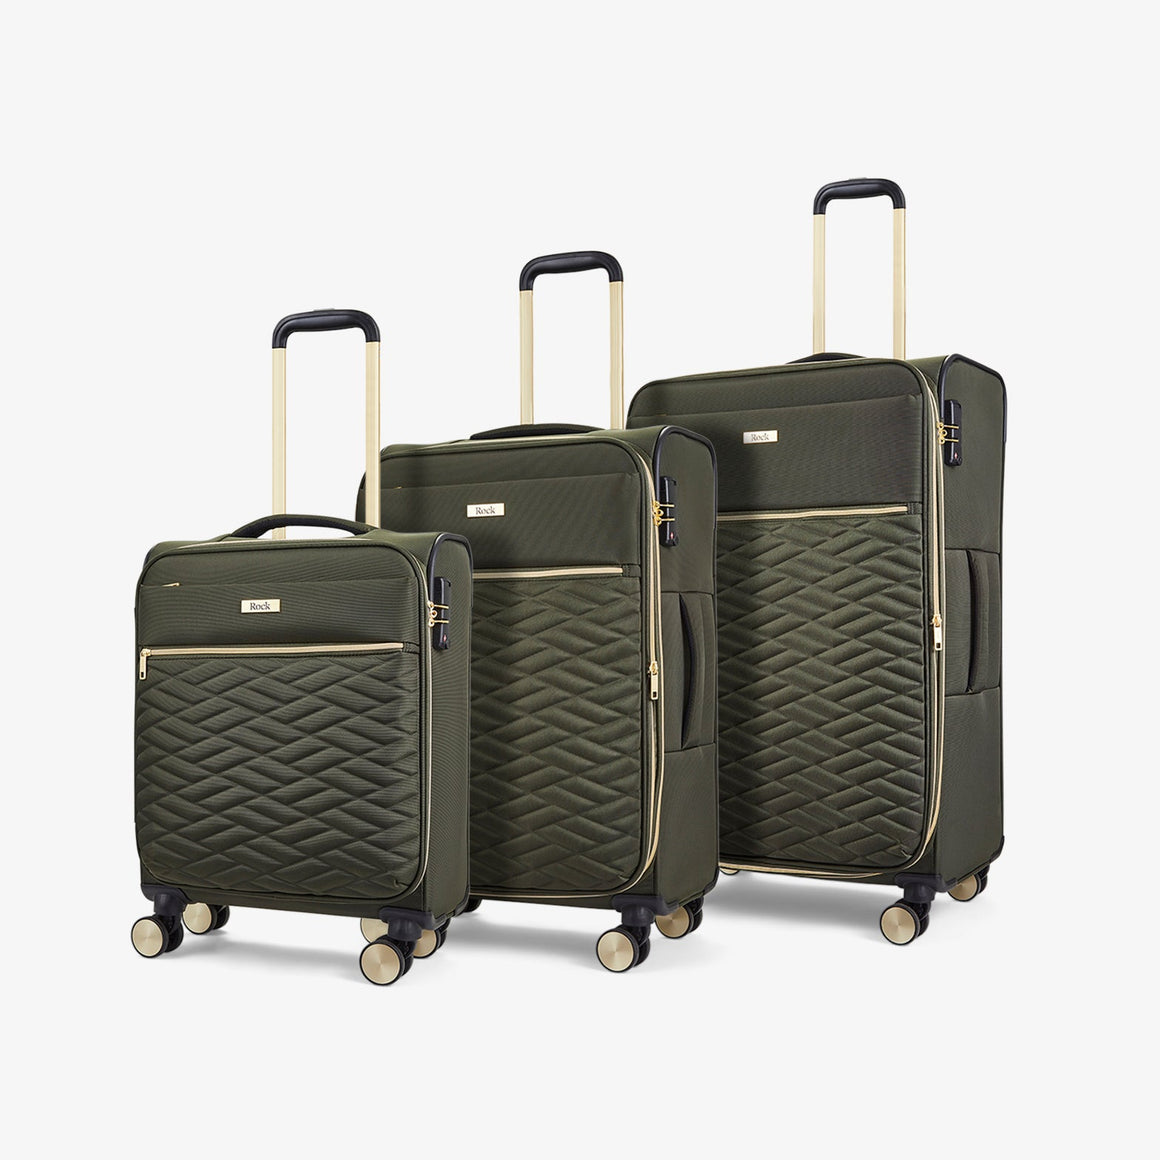 Sloane Set of 3 Suitcase in Khaki